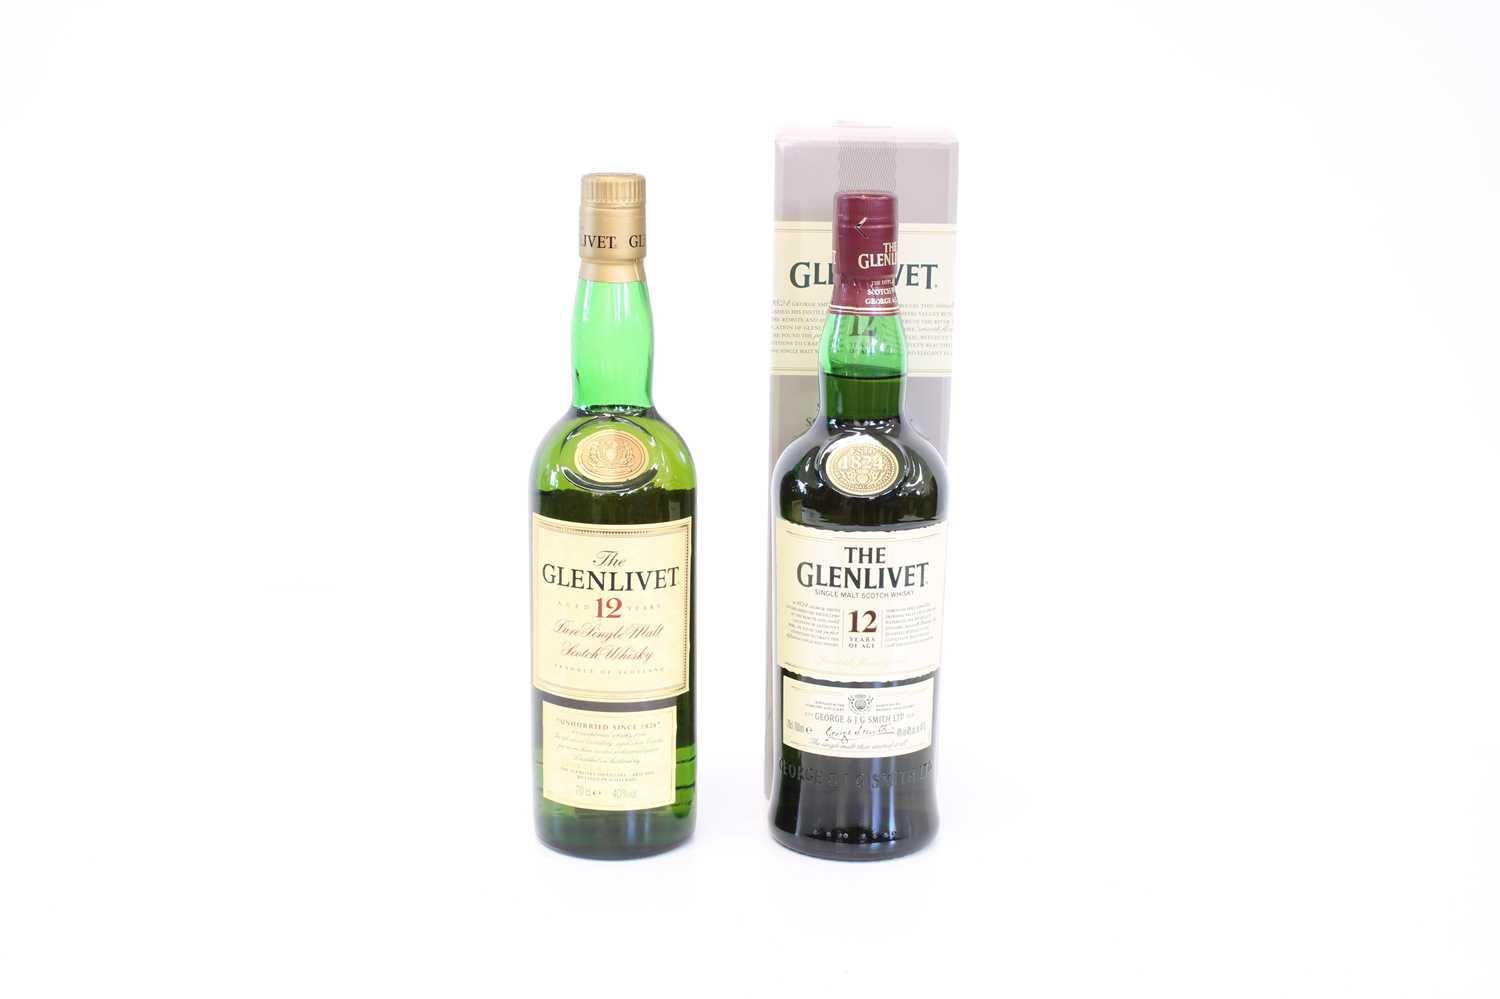 2 bottles of The Glenlivet 12 Year Old, Old Label